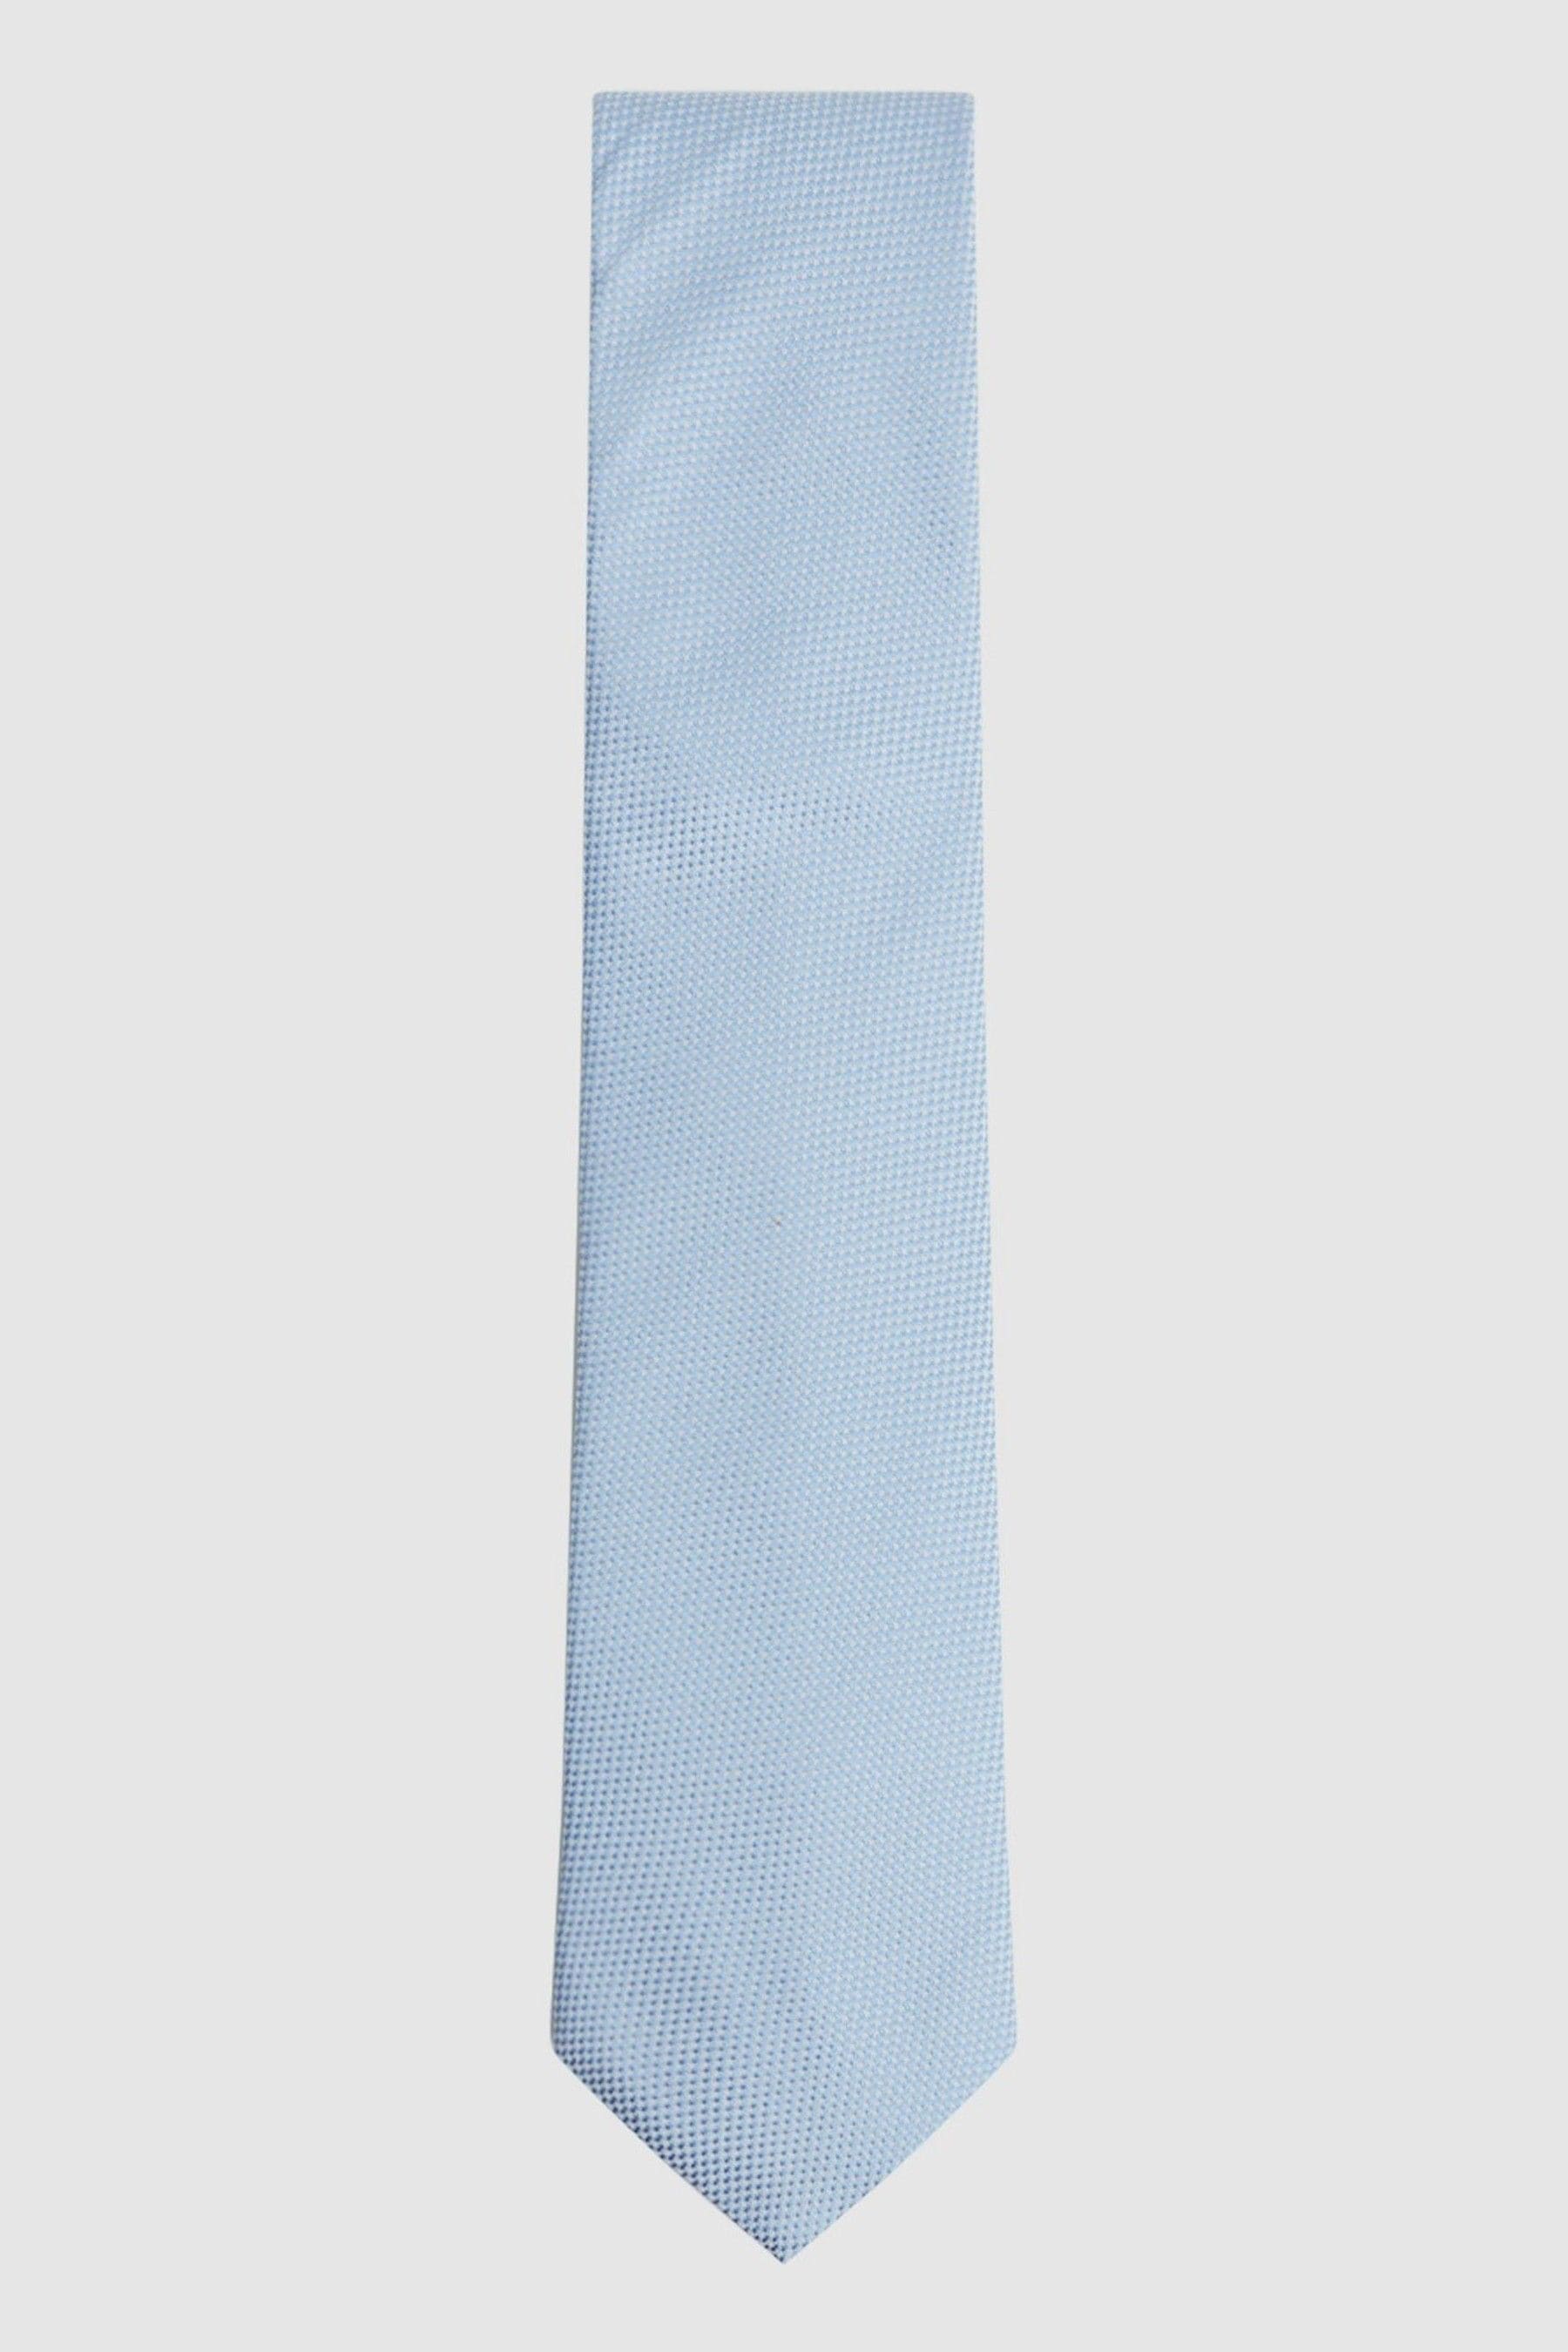 Shop Reiss Ceremony - Soft Blue Textured Silk Tie,